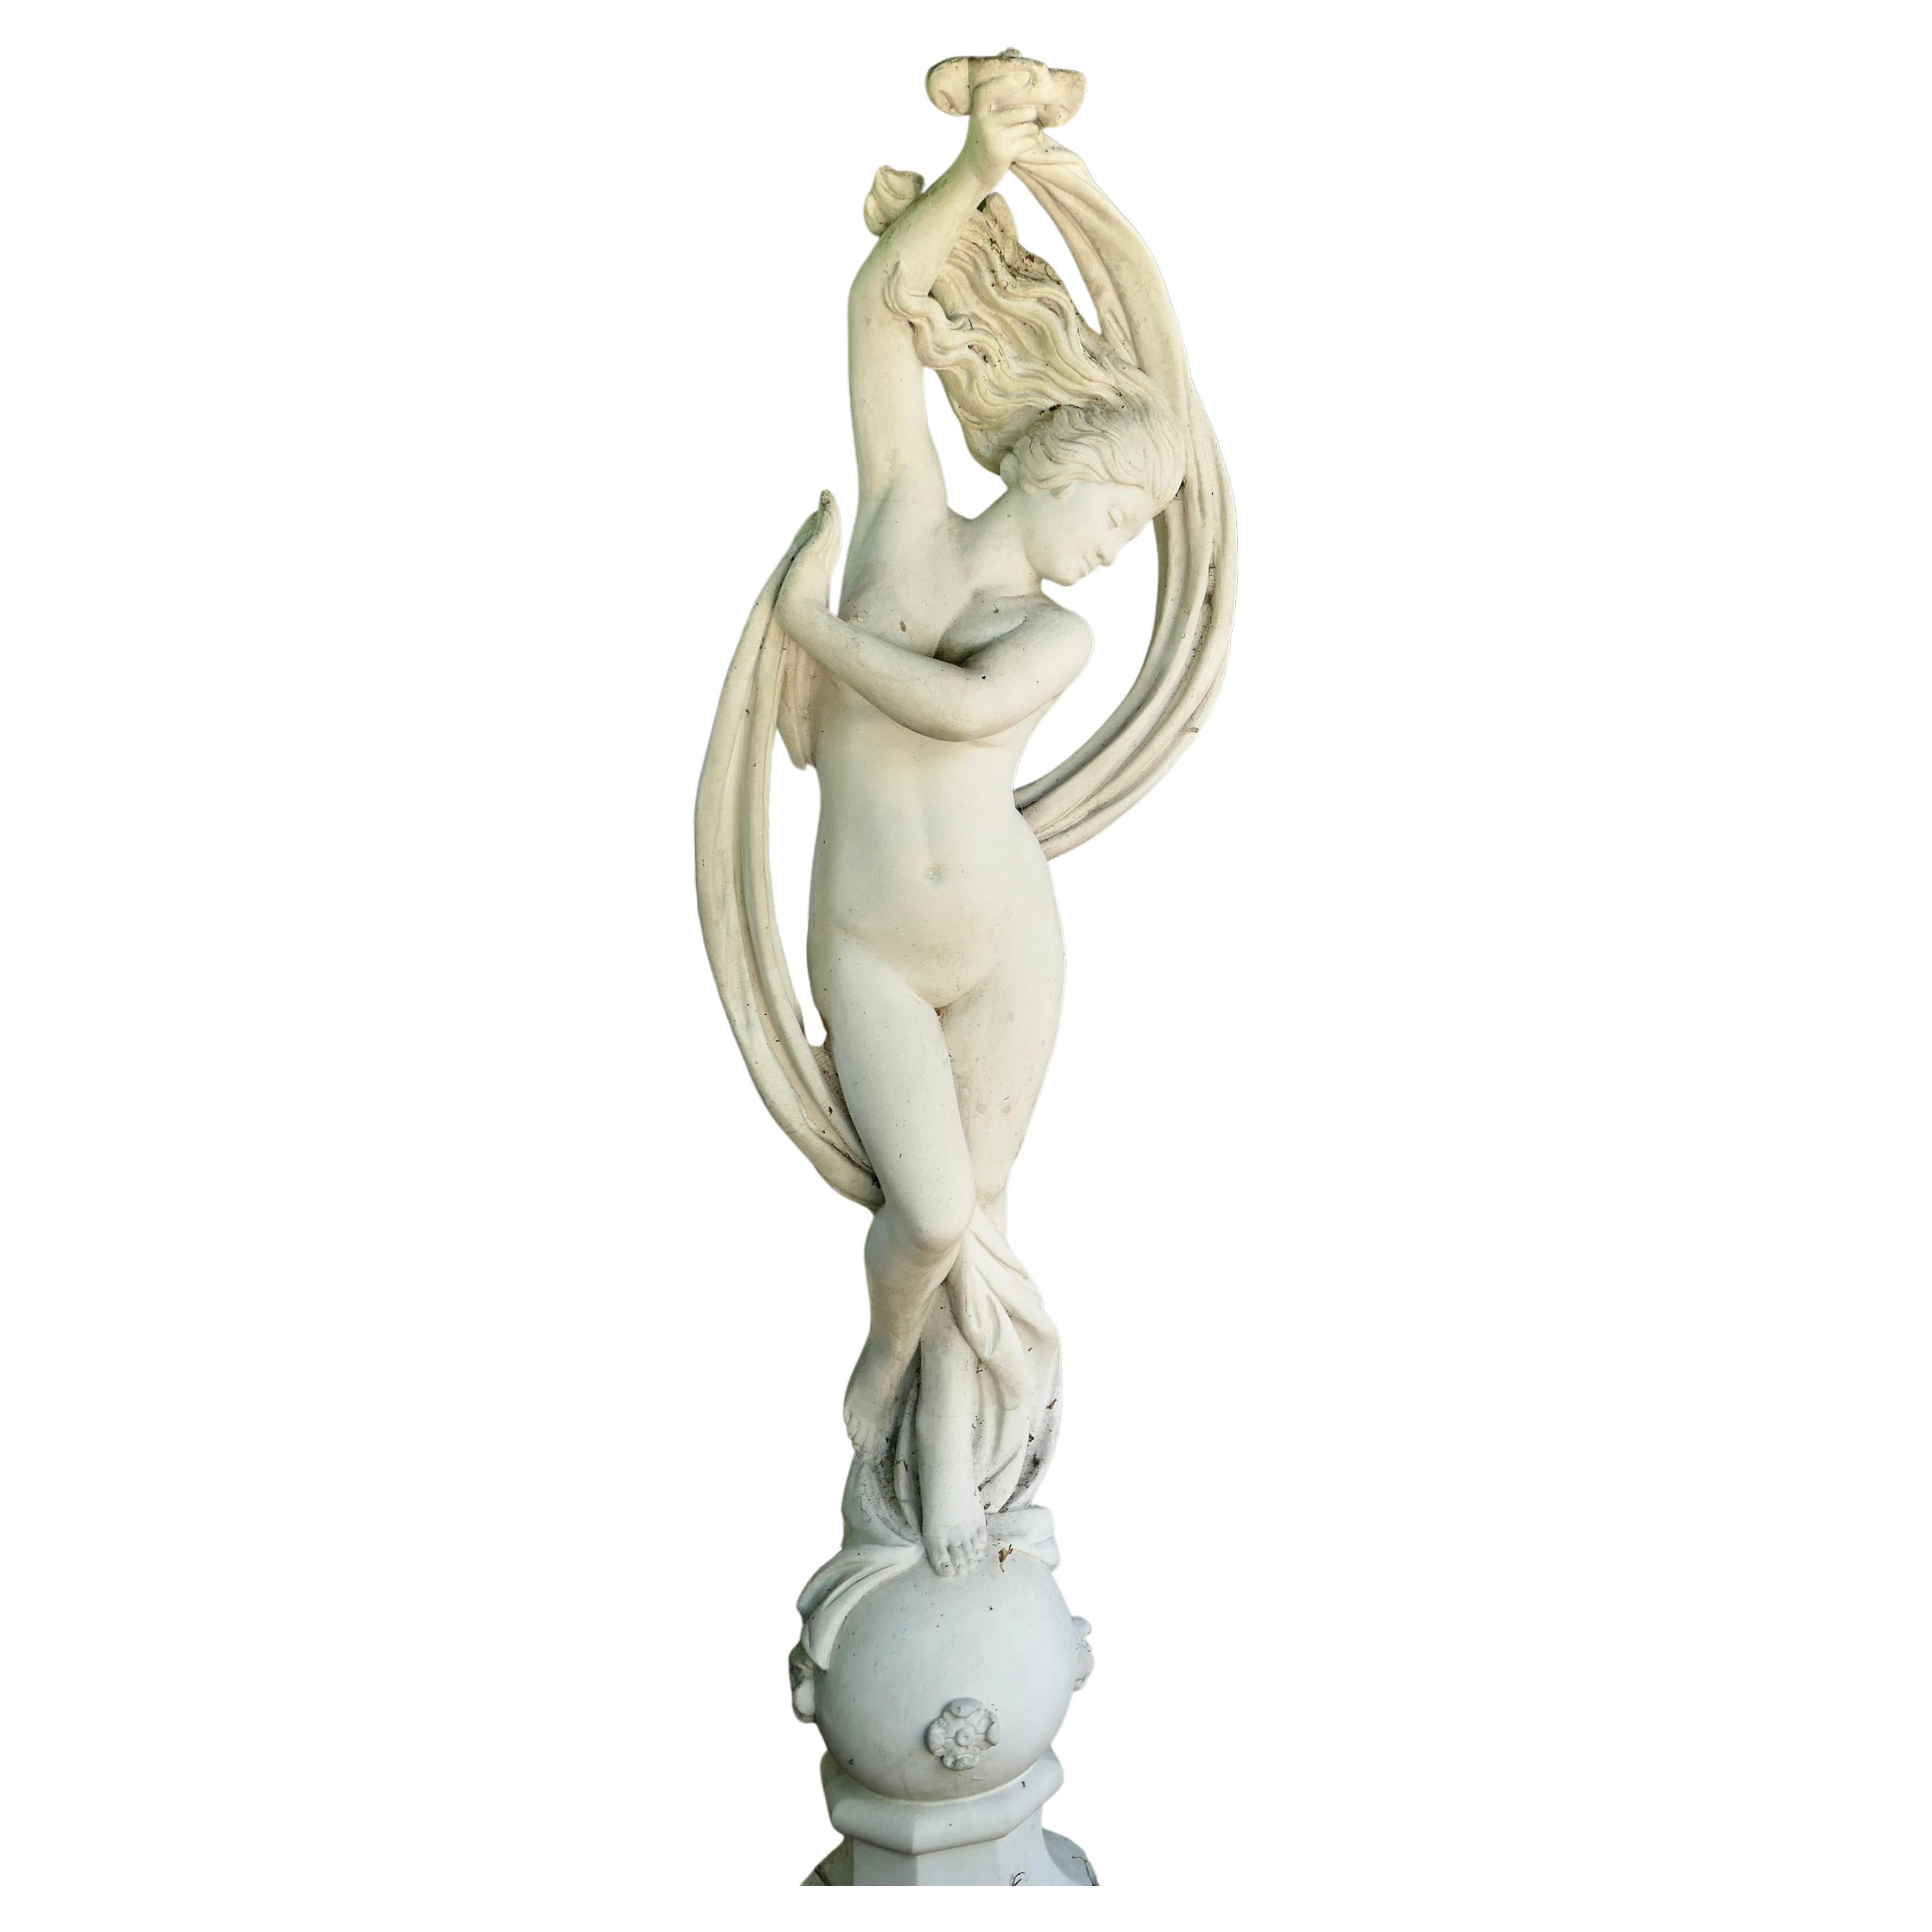 Sculpture en marbre d'une jeune fille dansante par Papini

Une sculpture en marbre 